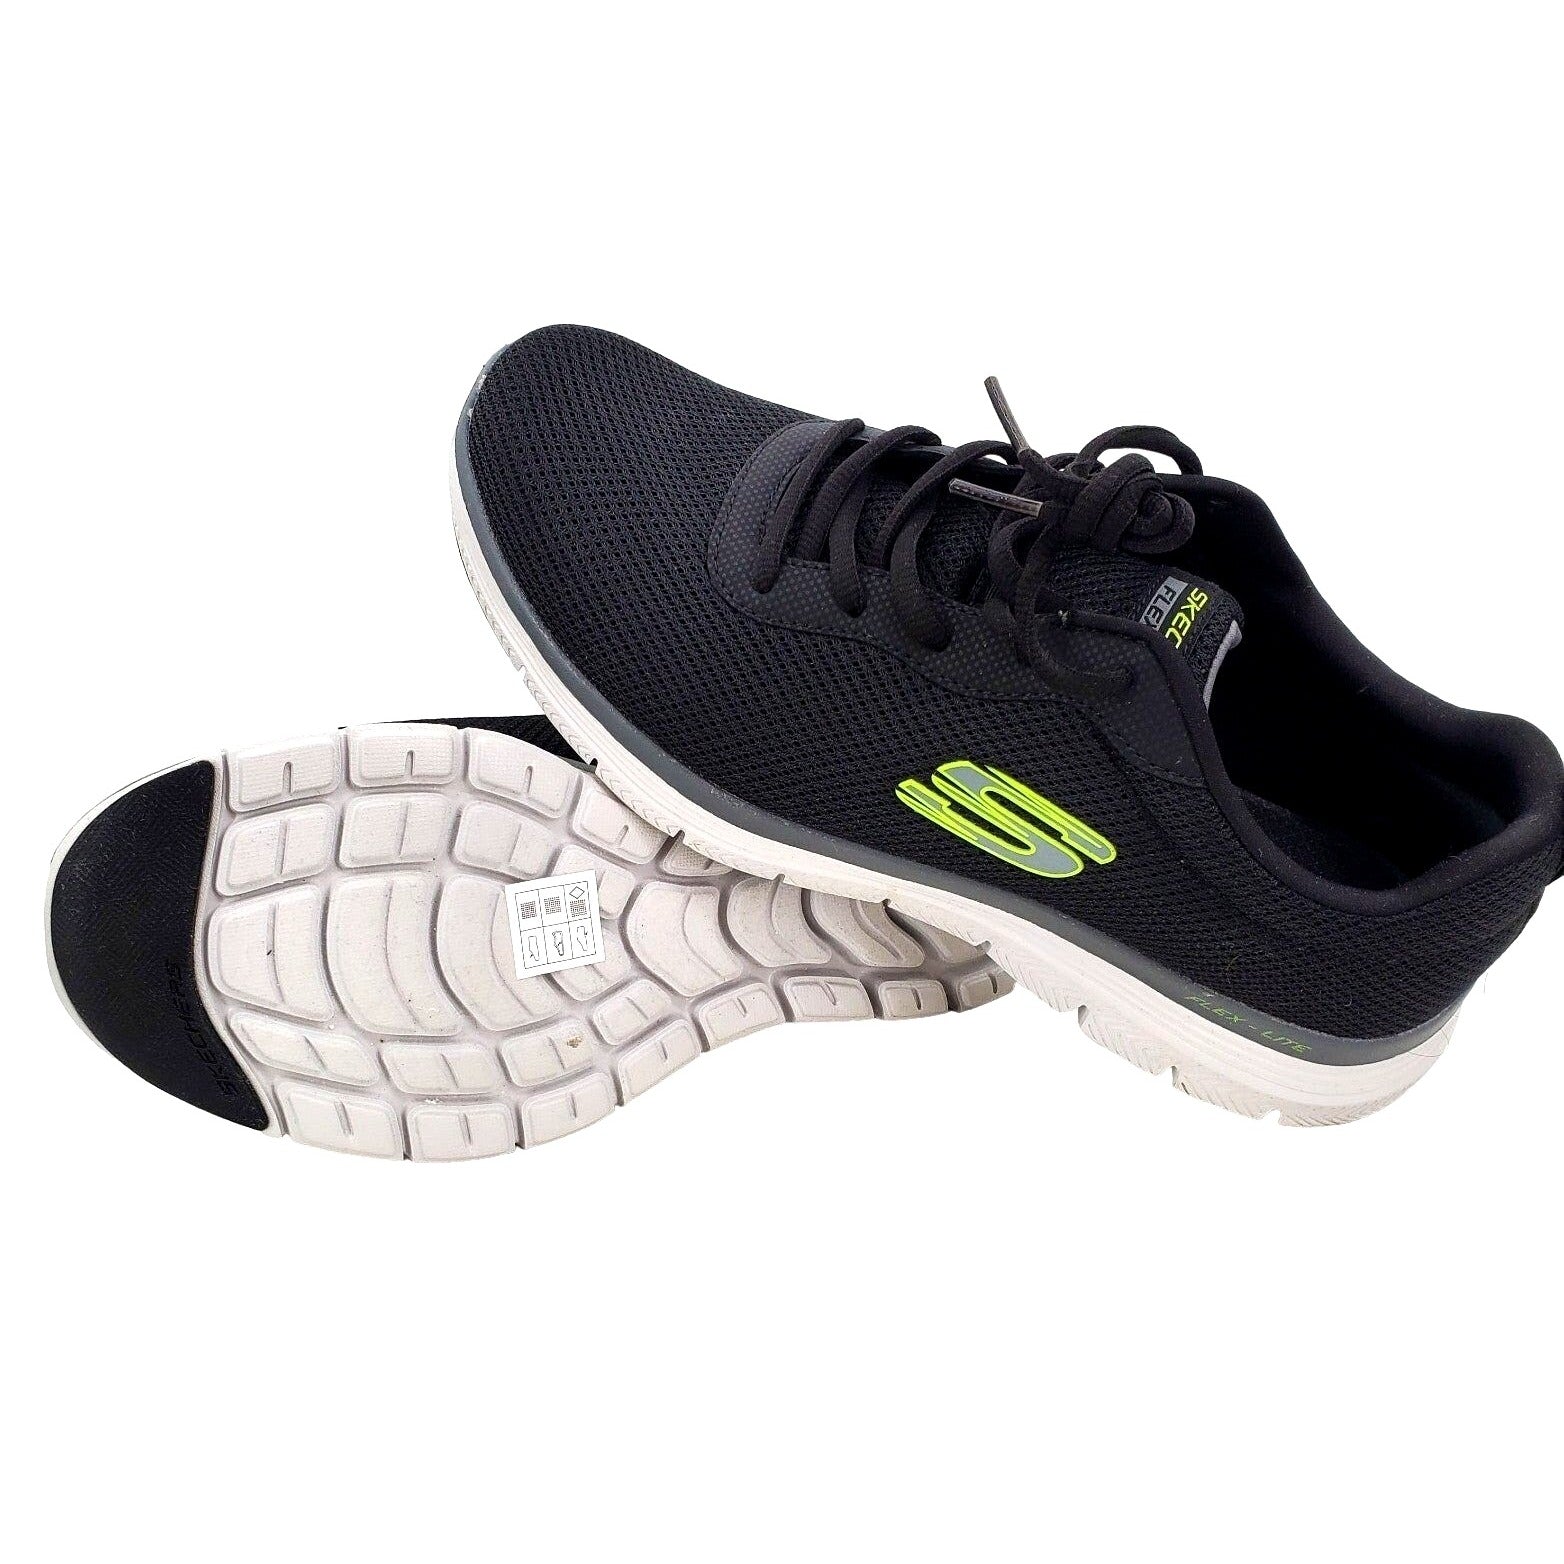 SKECHERS FLEX LITE ADVANTAGE 4.0 Mens Sneakers Activewear Athletic Shoes